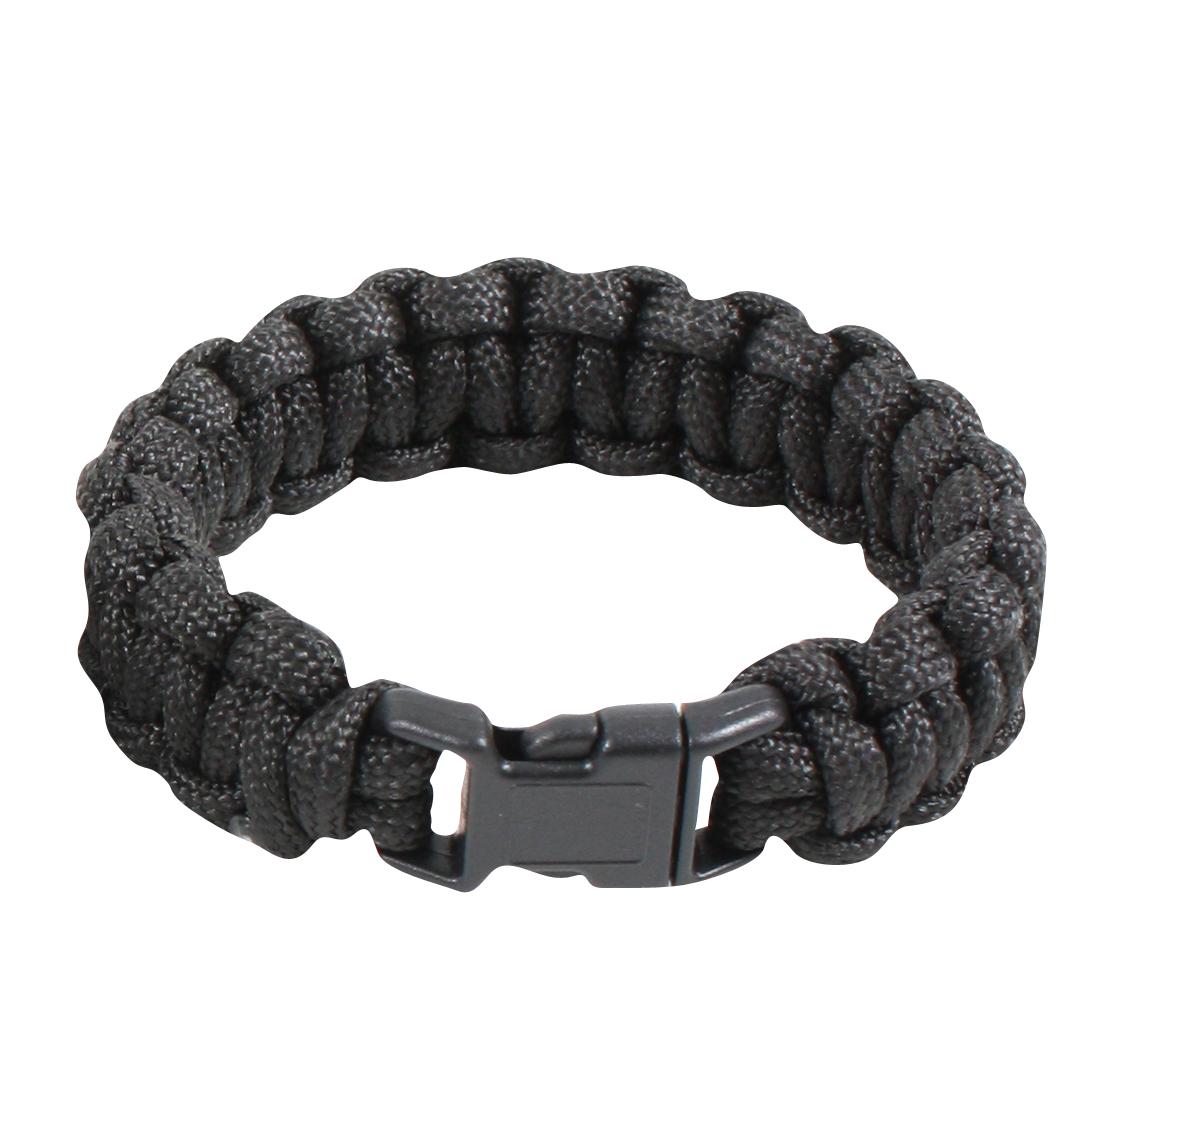 Paracord bracelet - Ropes & paracords